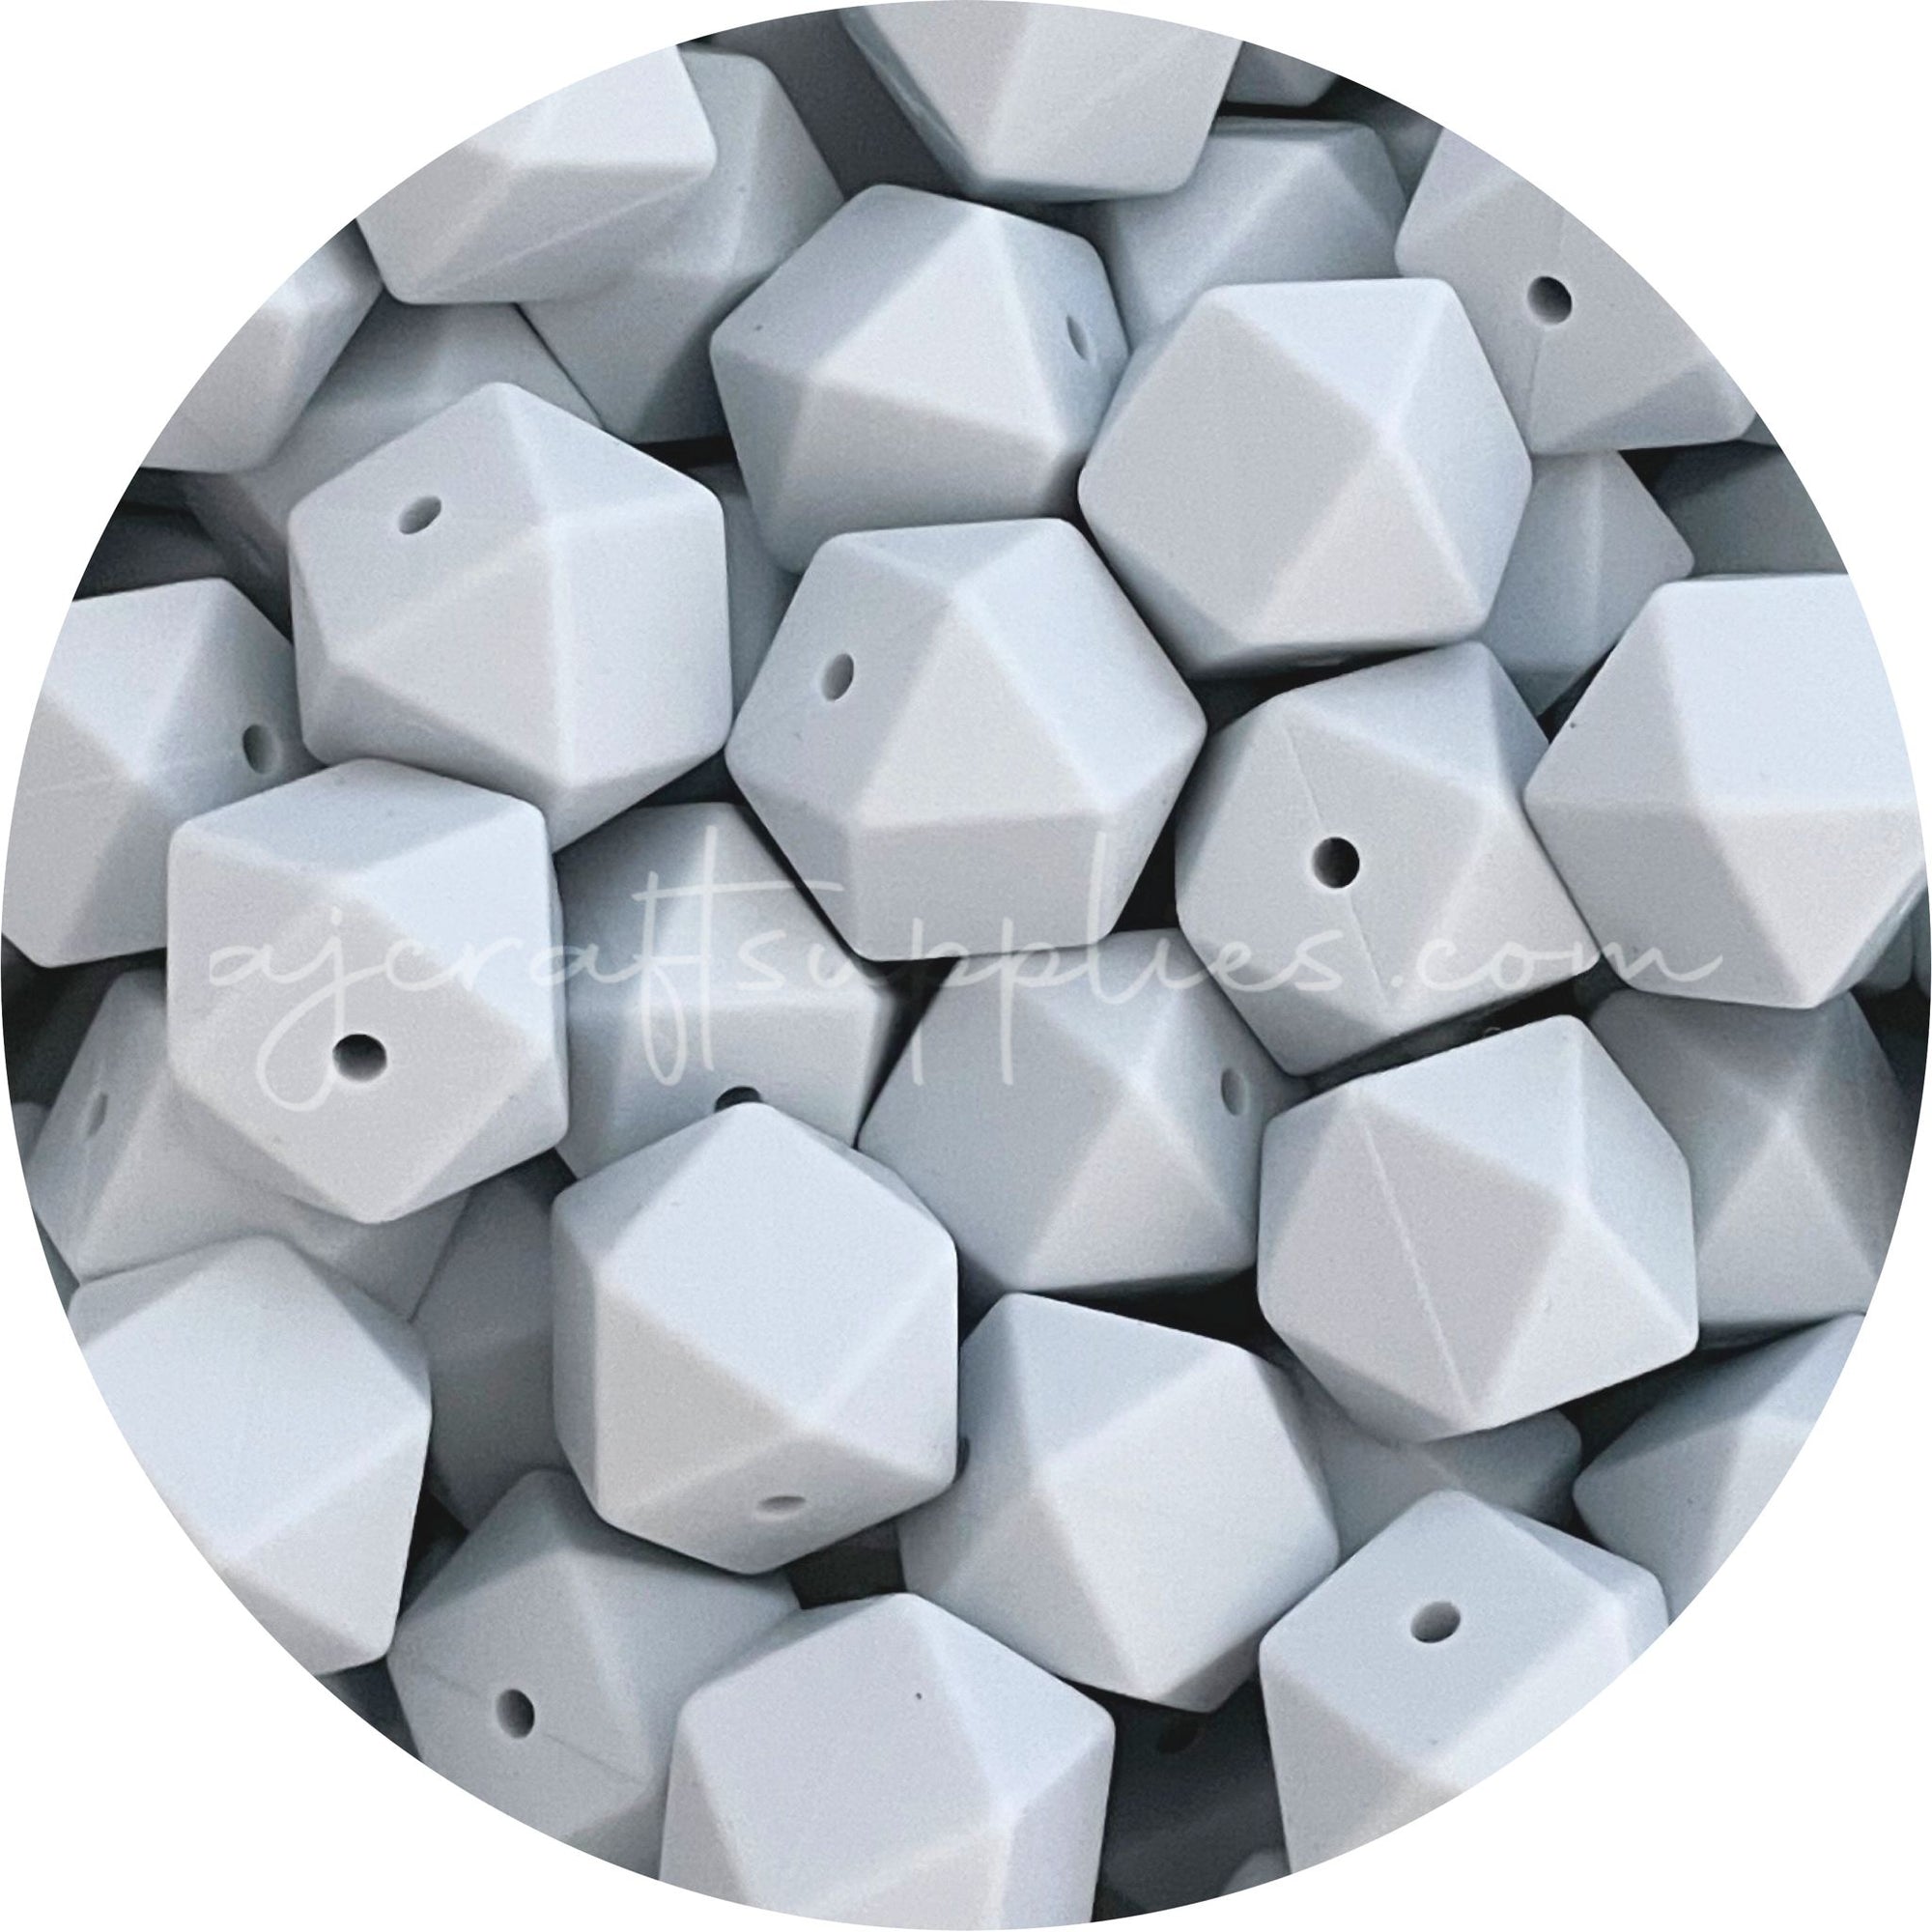 Silver Blue Mist - 17mm Hexagon - 10 Beads